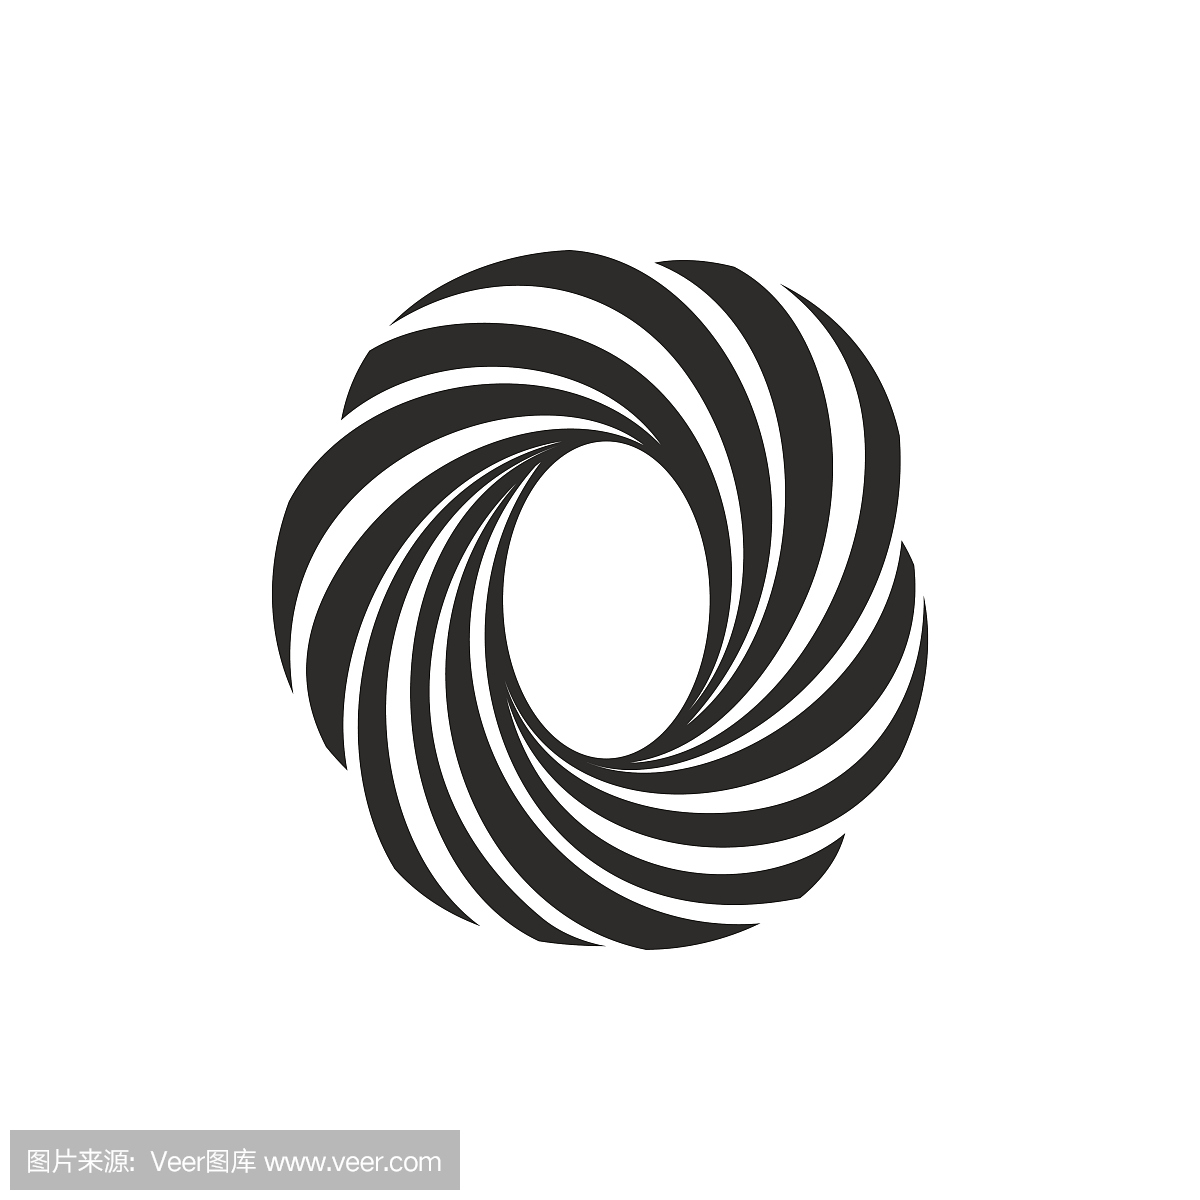 由扭曲线形成的O字母图标。